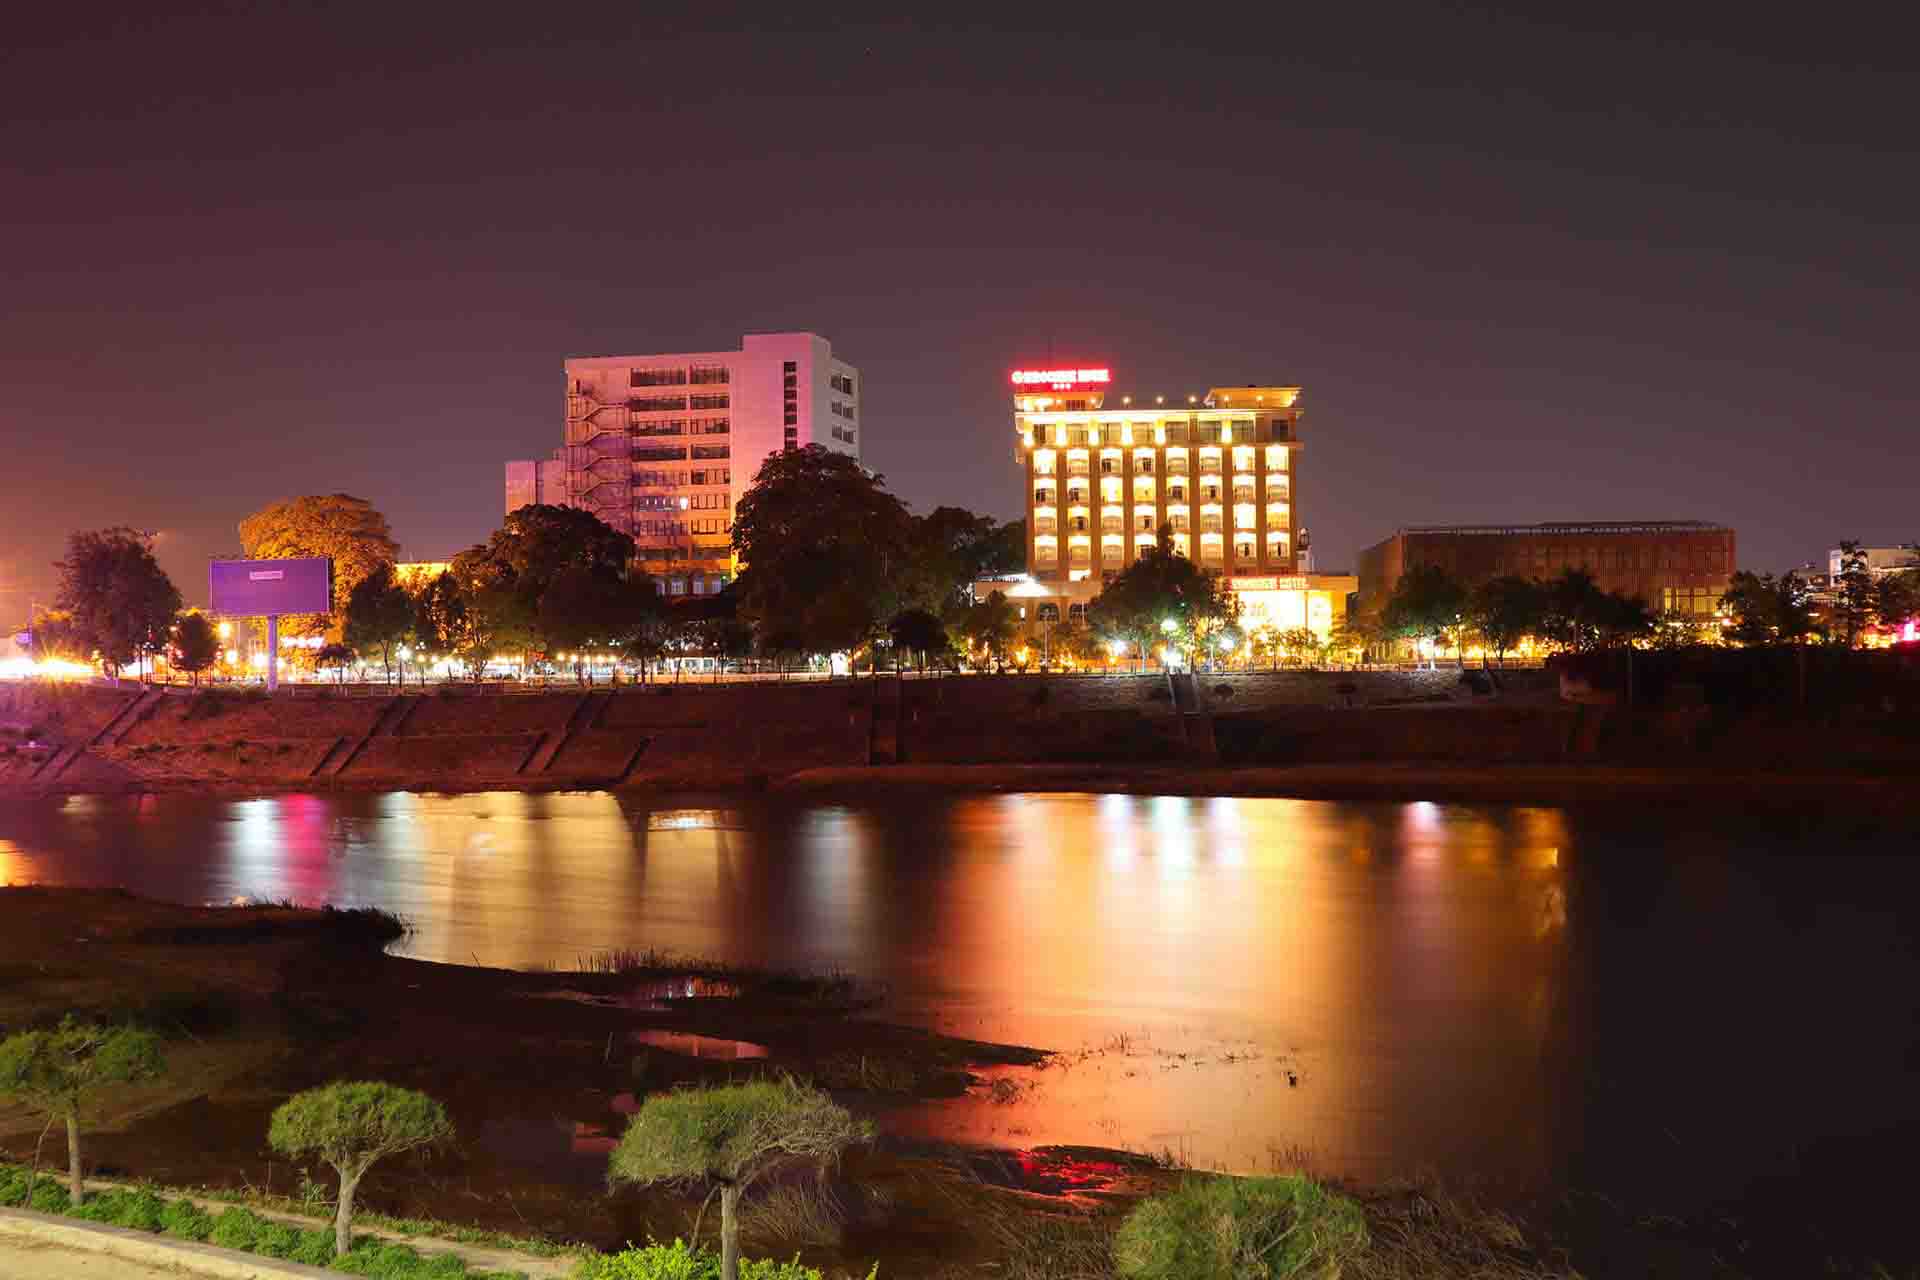 Đêm phố núi Kon Tum 04/2021 - Khách sạn Đông Dương bên dòng sông Đăk Bla 